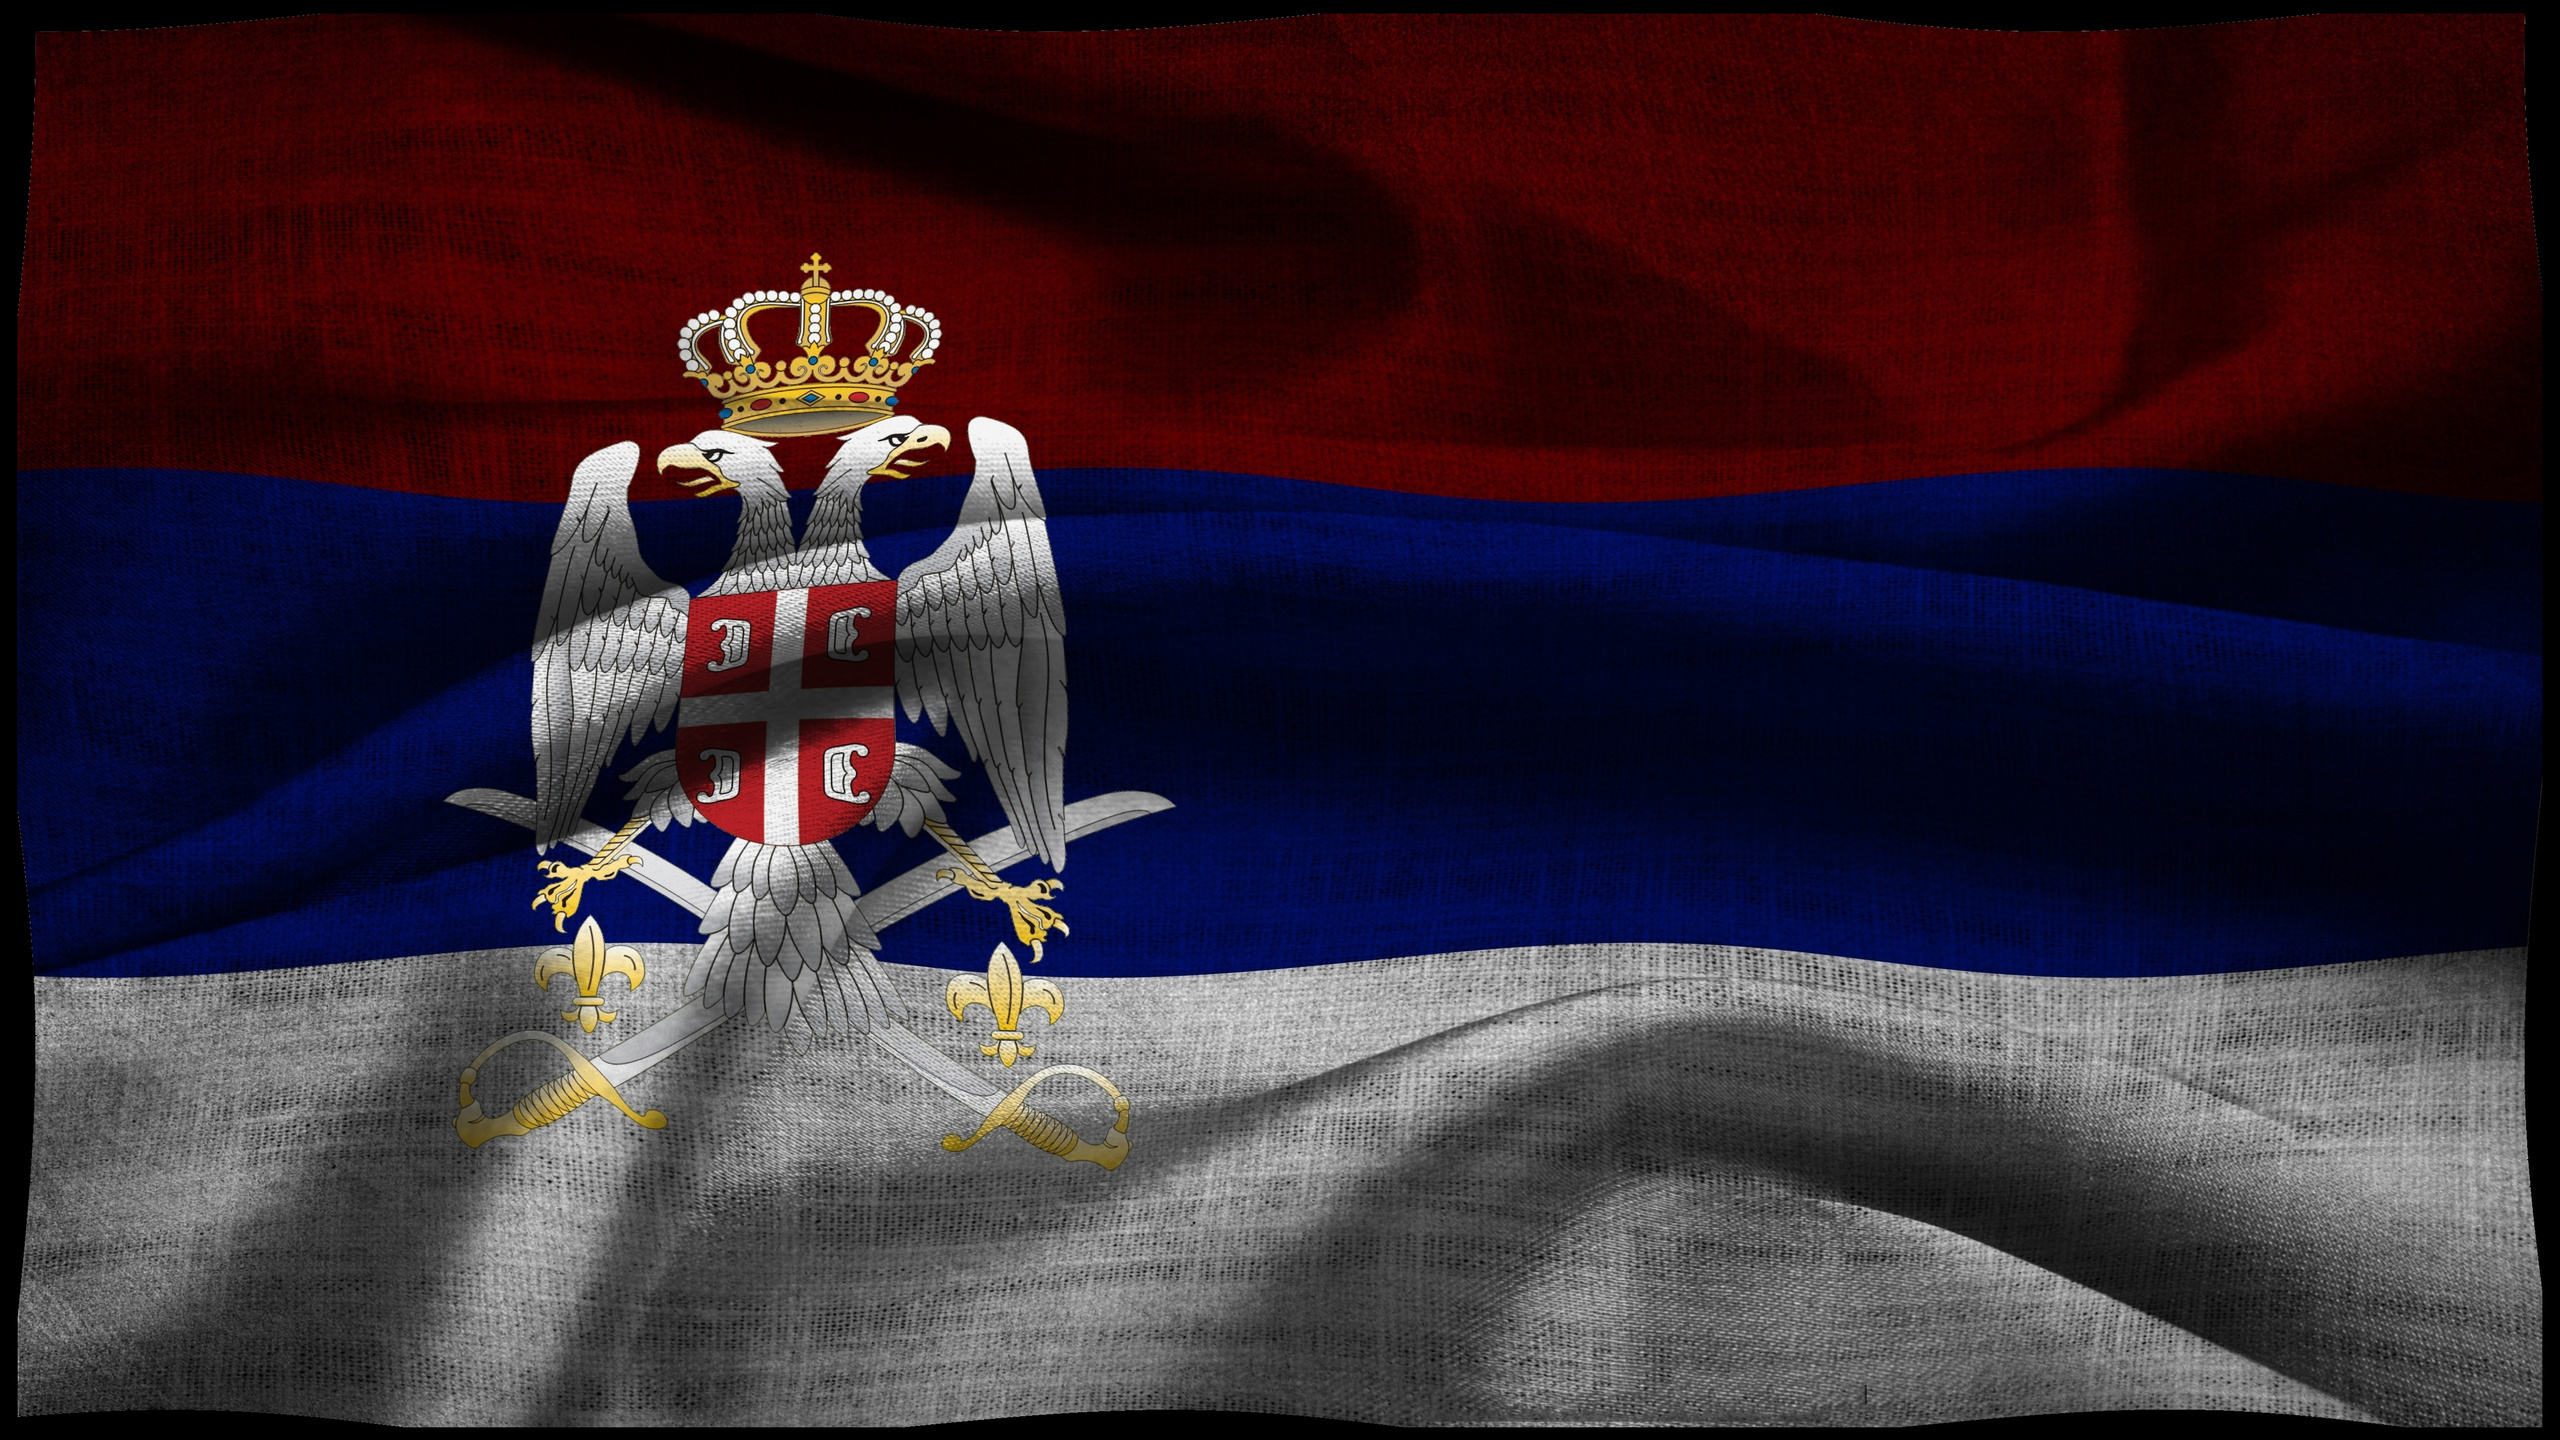 Descarga gratuita de fondo de pantalla para móvil de Banderas, Bandera, Miscelaneo, Bandera Serbia.